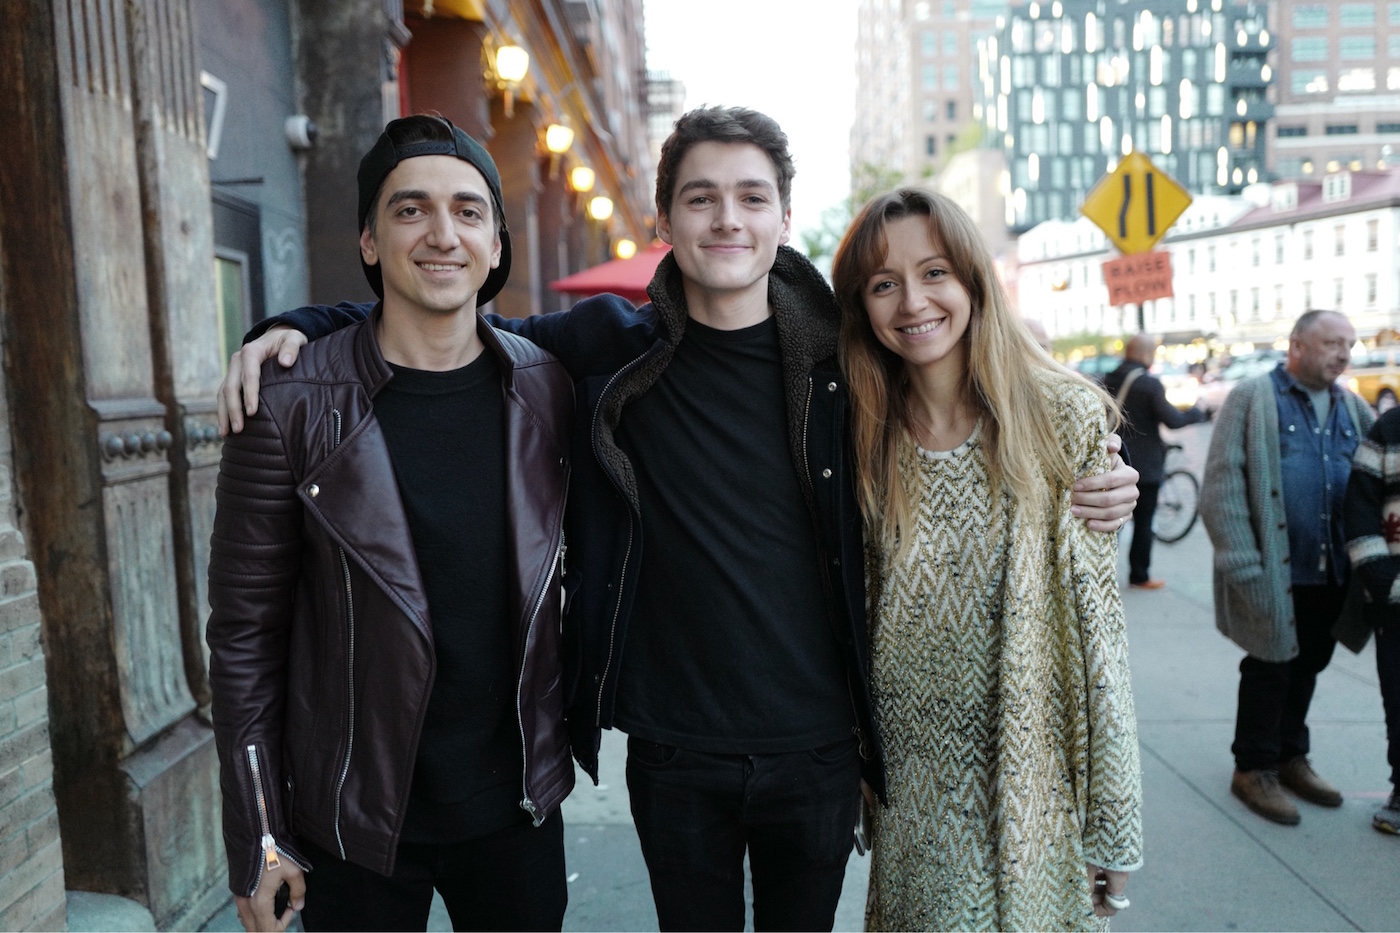 Murad and Nataly Osmann with Finn Harries near the Soho House Hotel, New York